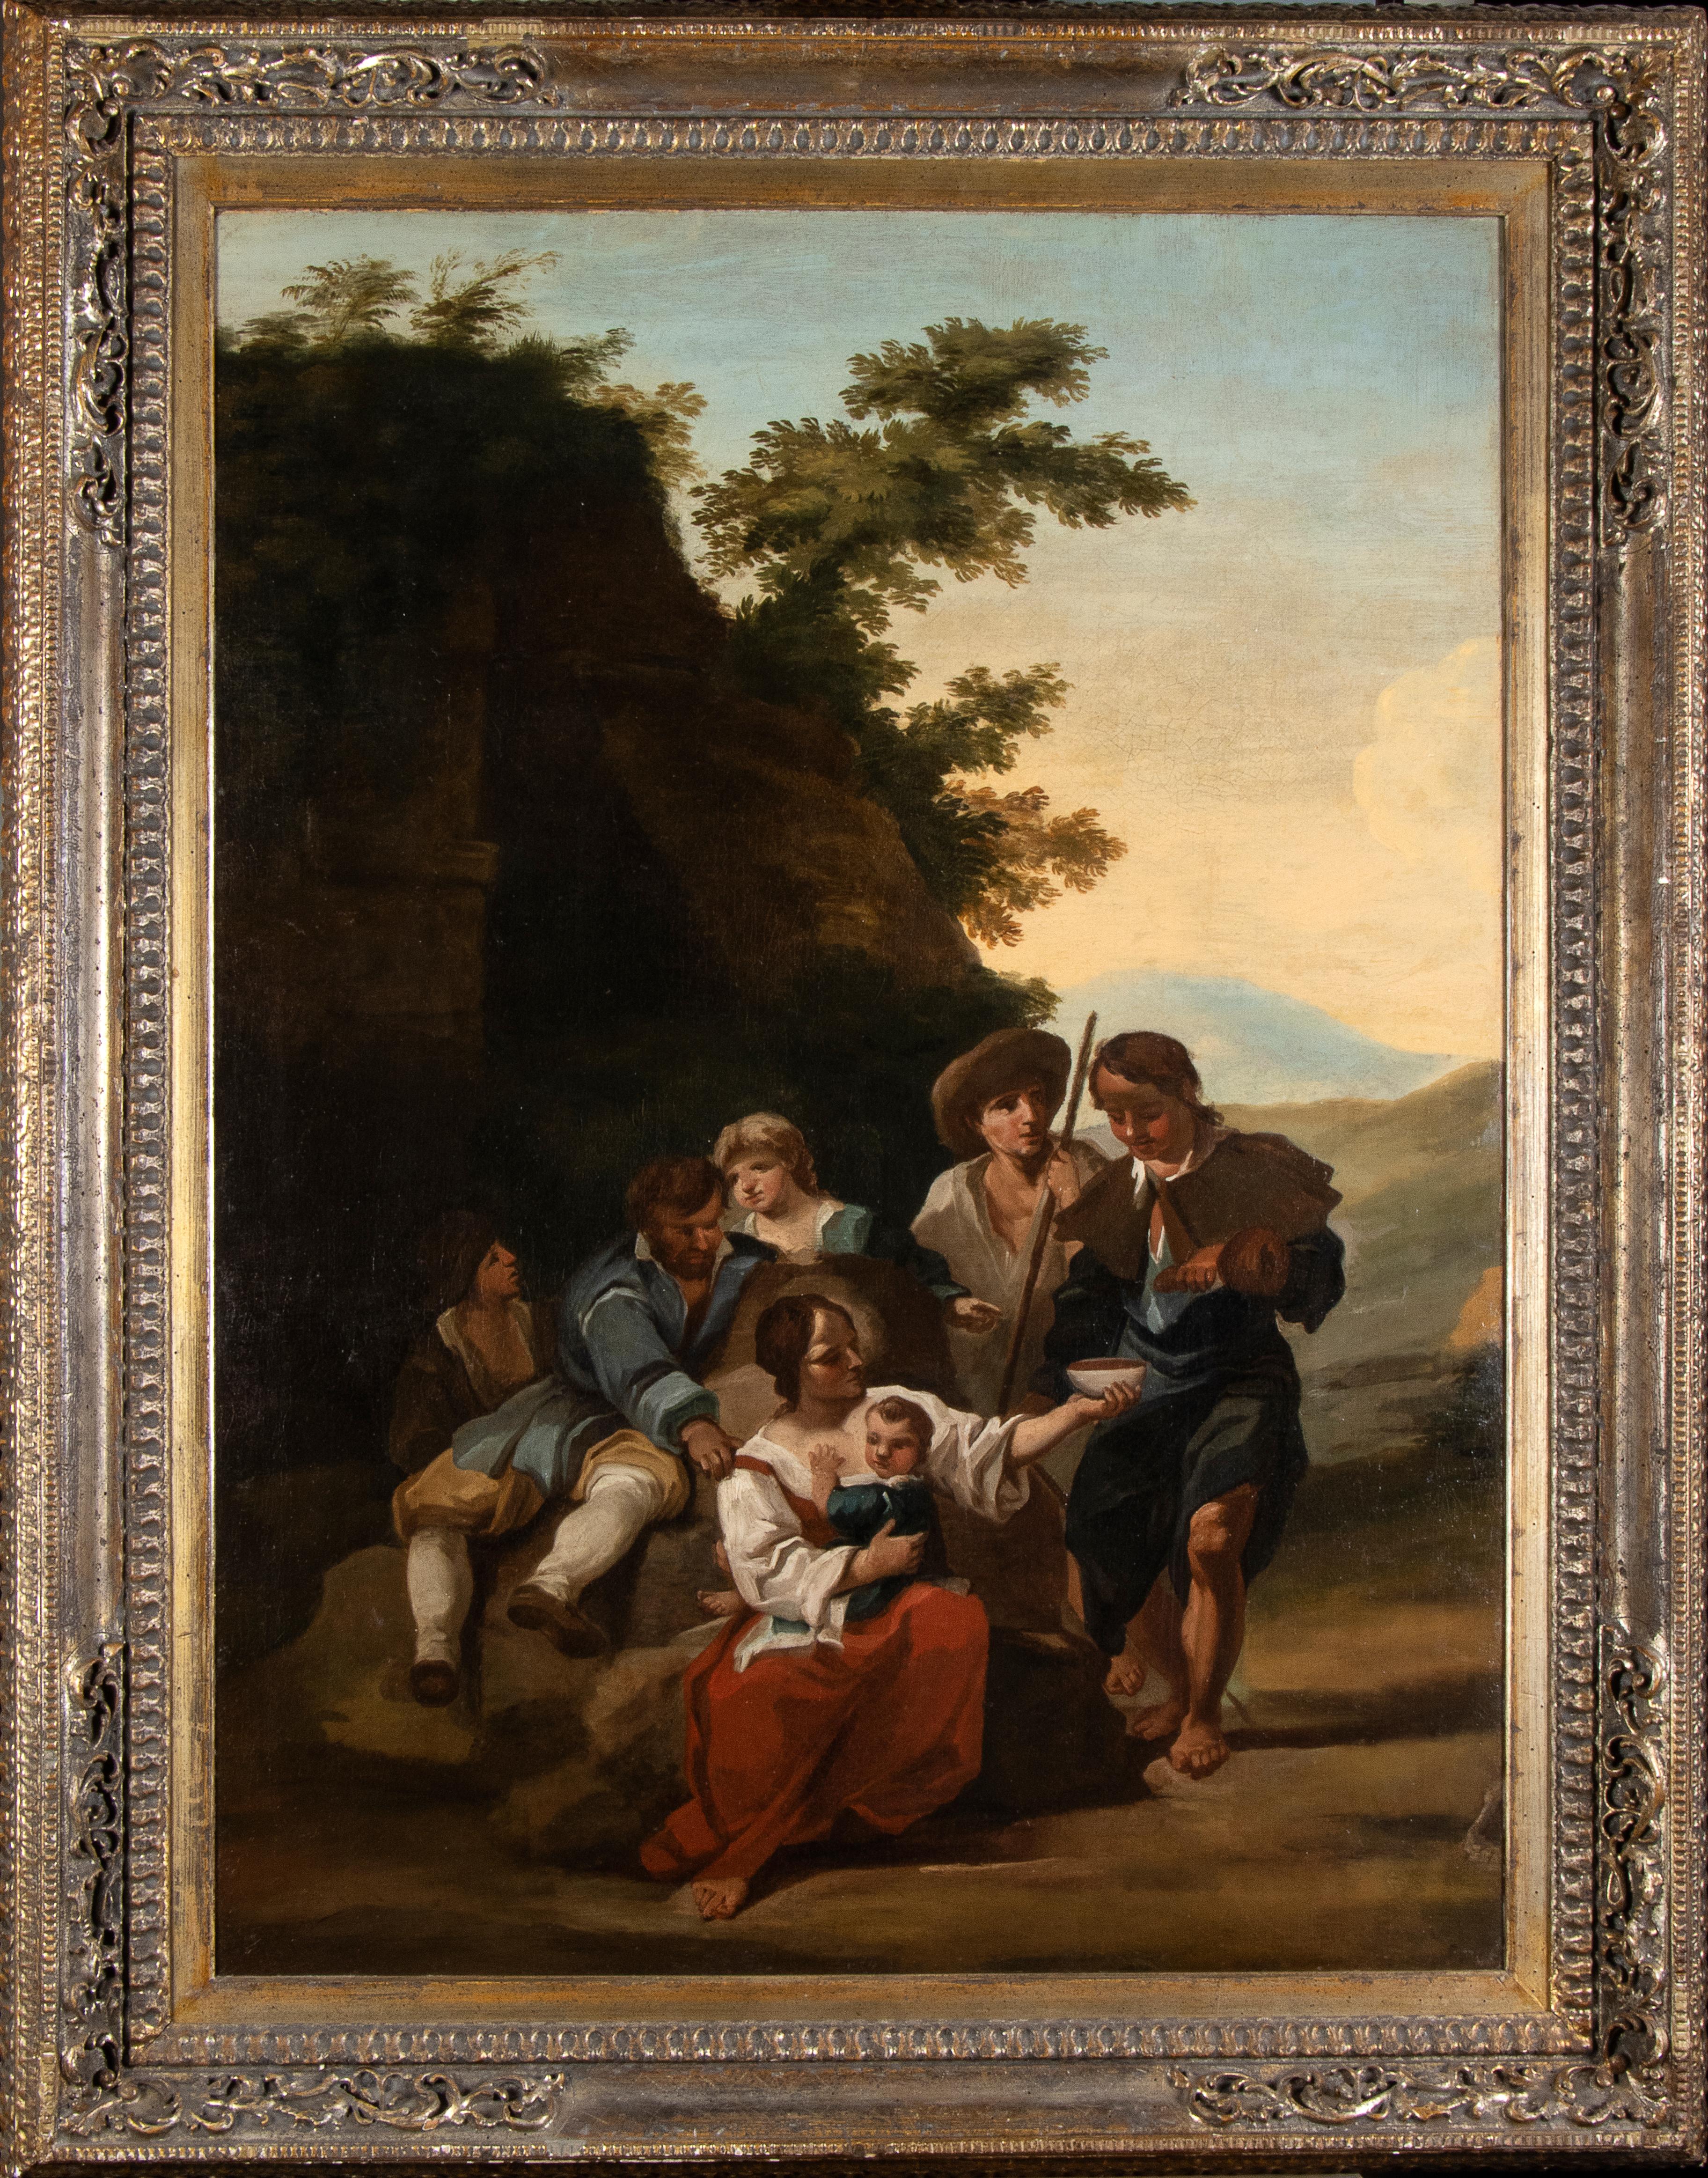 Das Gemälde wird von einem Gutachten begleitet, das von Prof. Ferdinando Arisi erstellt wurde:
Diese Pilgerstation ist ein typisches Werk von Paolo Monaldi, der zwischen 1730 und 1770 in Rom im Gefolge von Locatelli tätig war.
Die Berührungspunkte